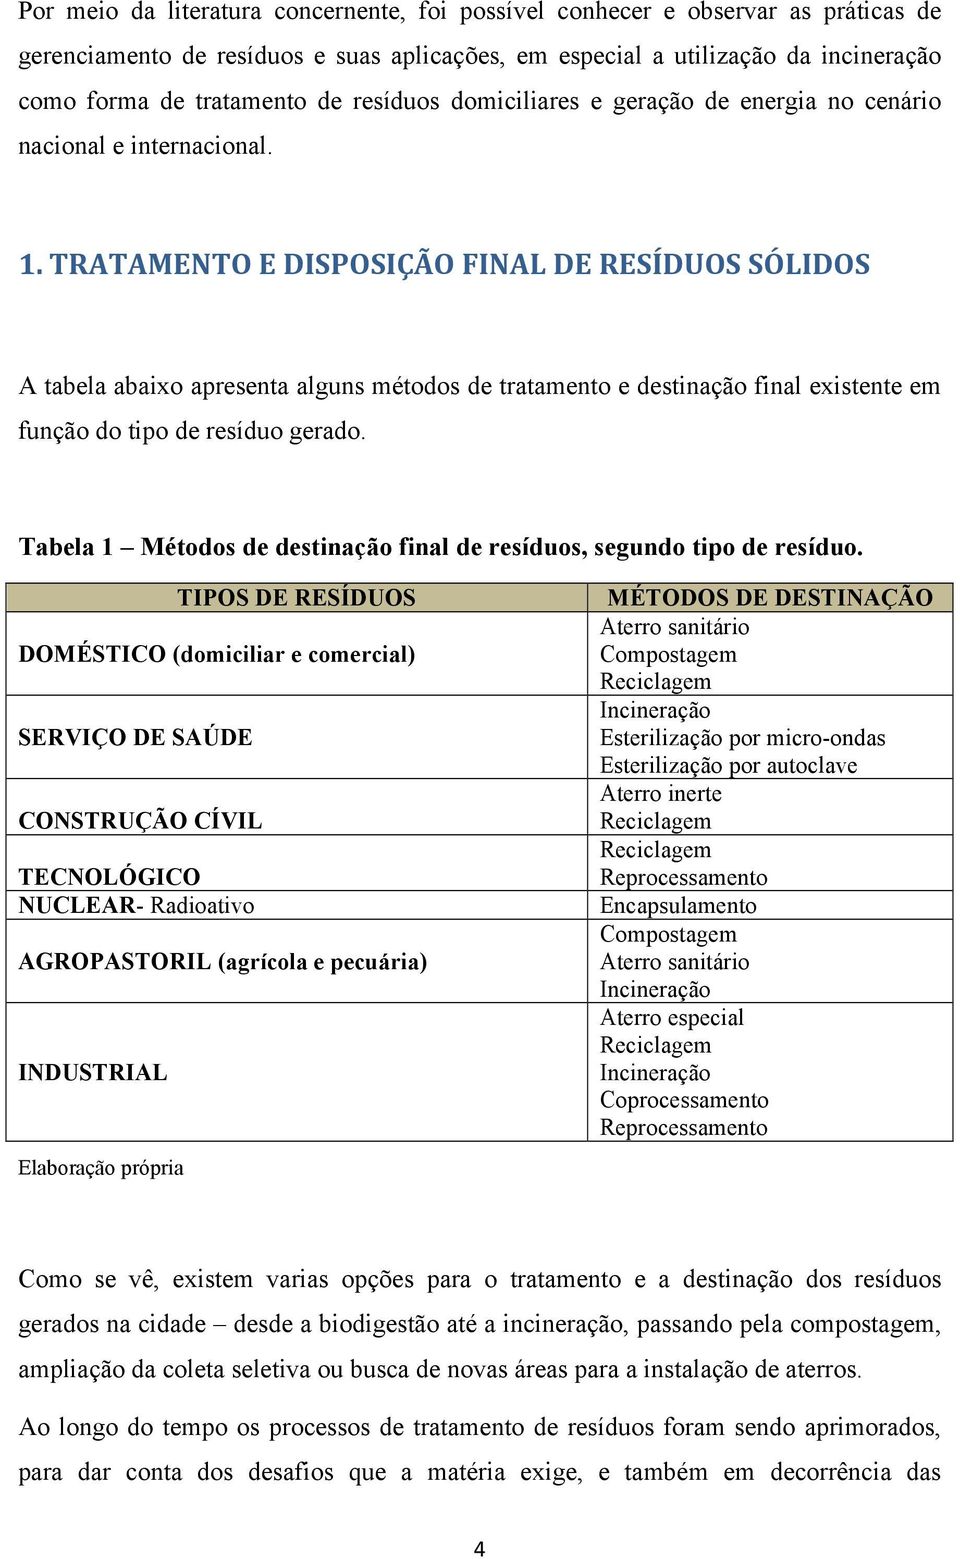 TRATAMENTO E DISPOSIÇÃO FINAL DE RESÍDUOS SÓLIDOS A tabela abaixo apresenta alguns métodos de tratamento e destinação final existente em função do tipo de resíduo gerado.